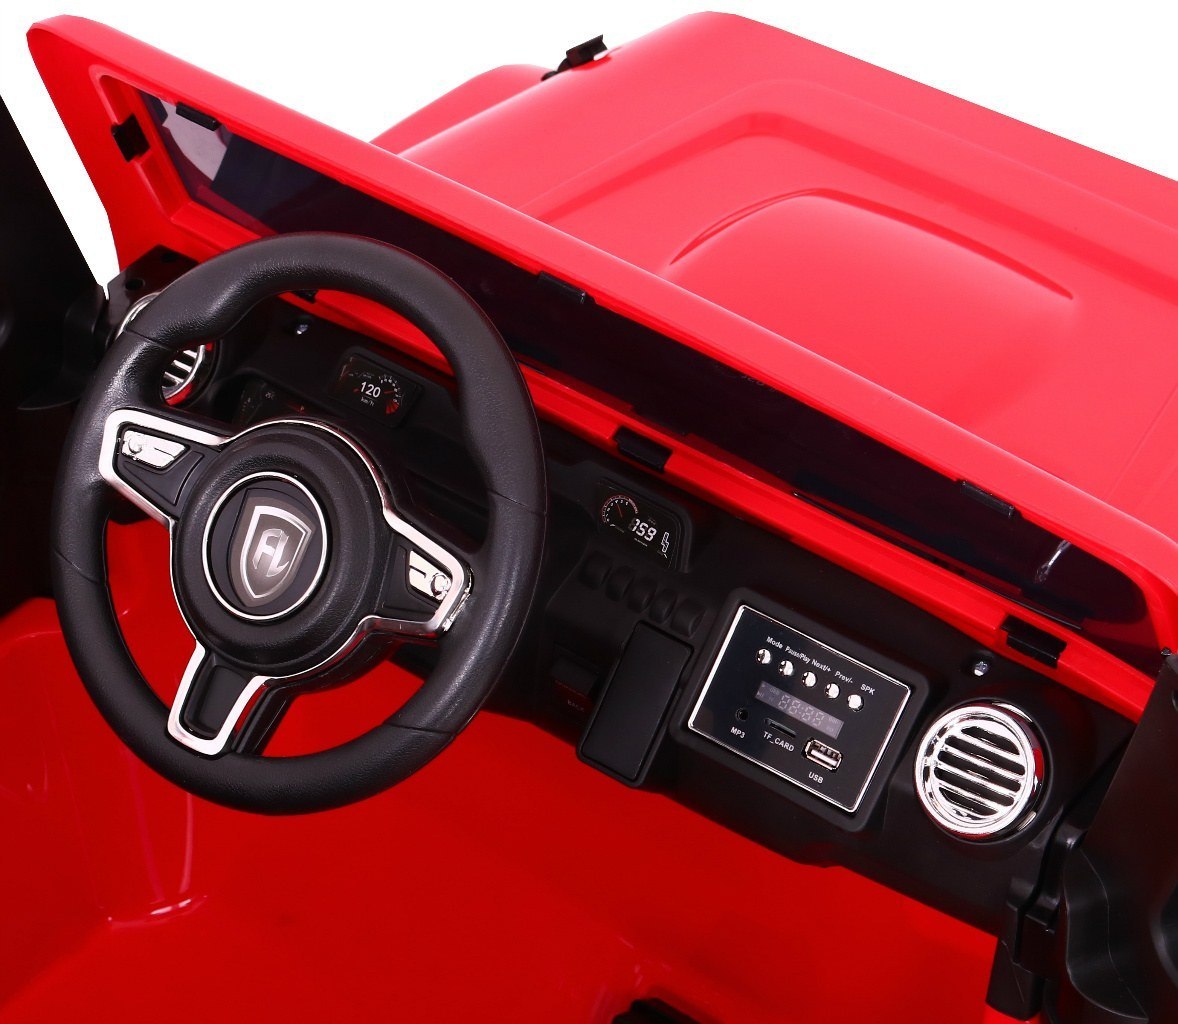 Auto na akumulator Mighty Jeep 4x4 Wolny Start Pilot EVA LED MP3